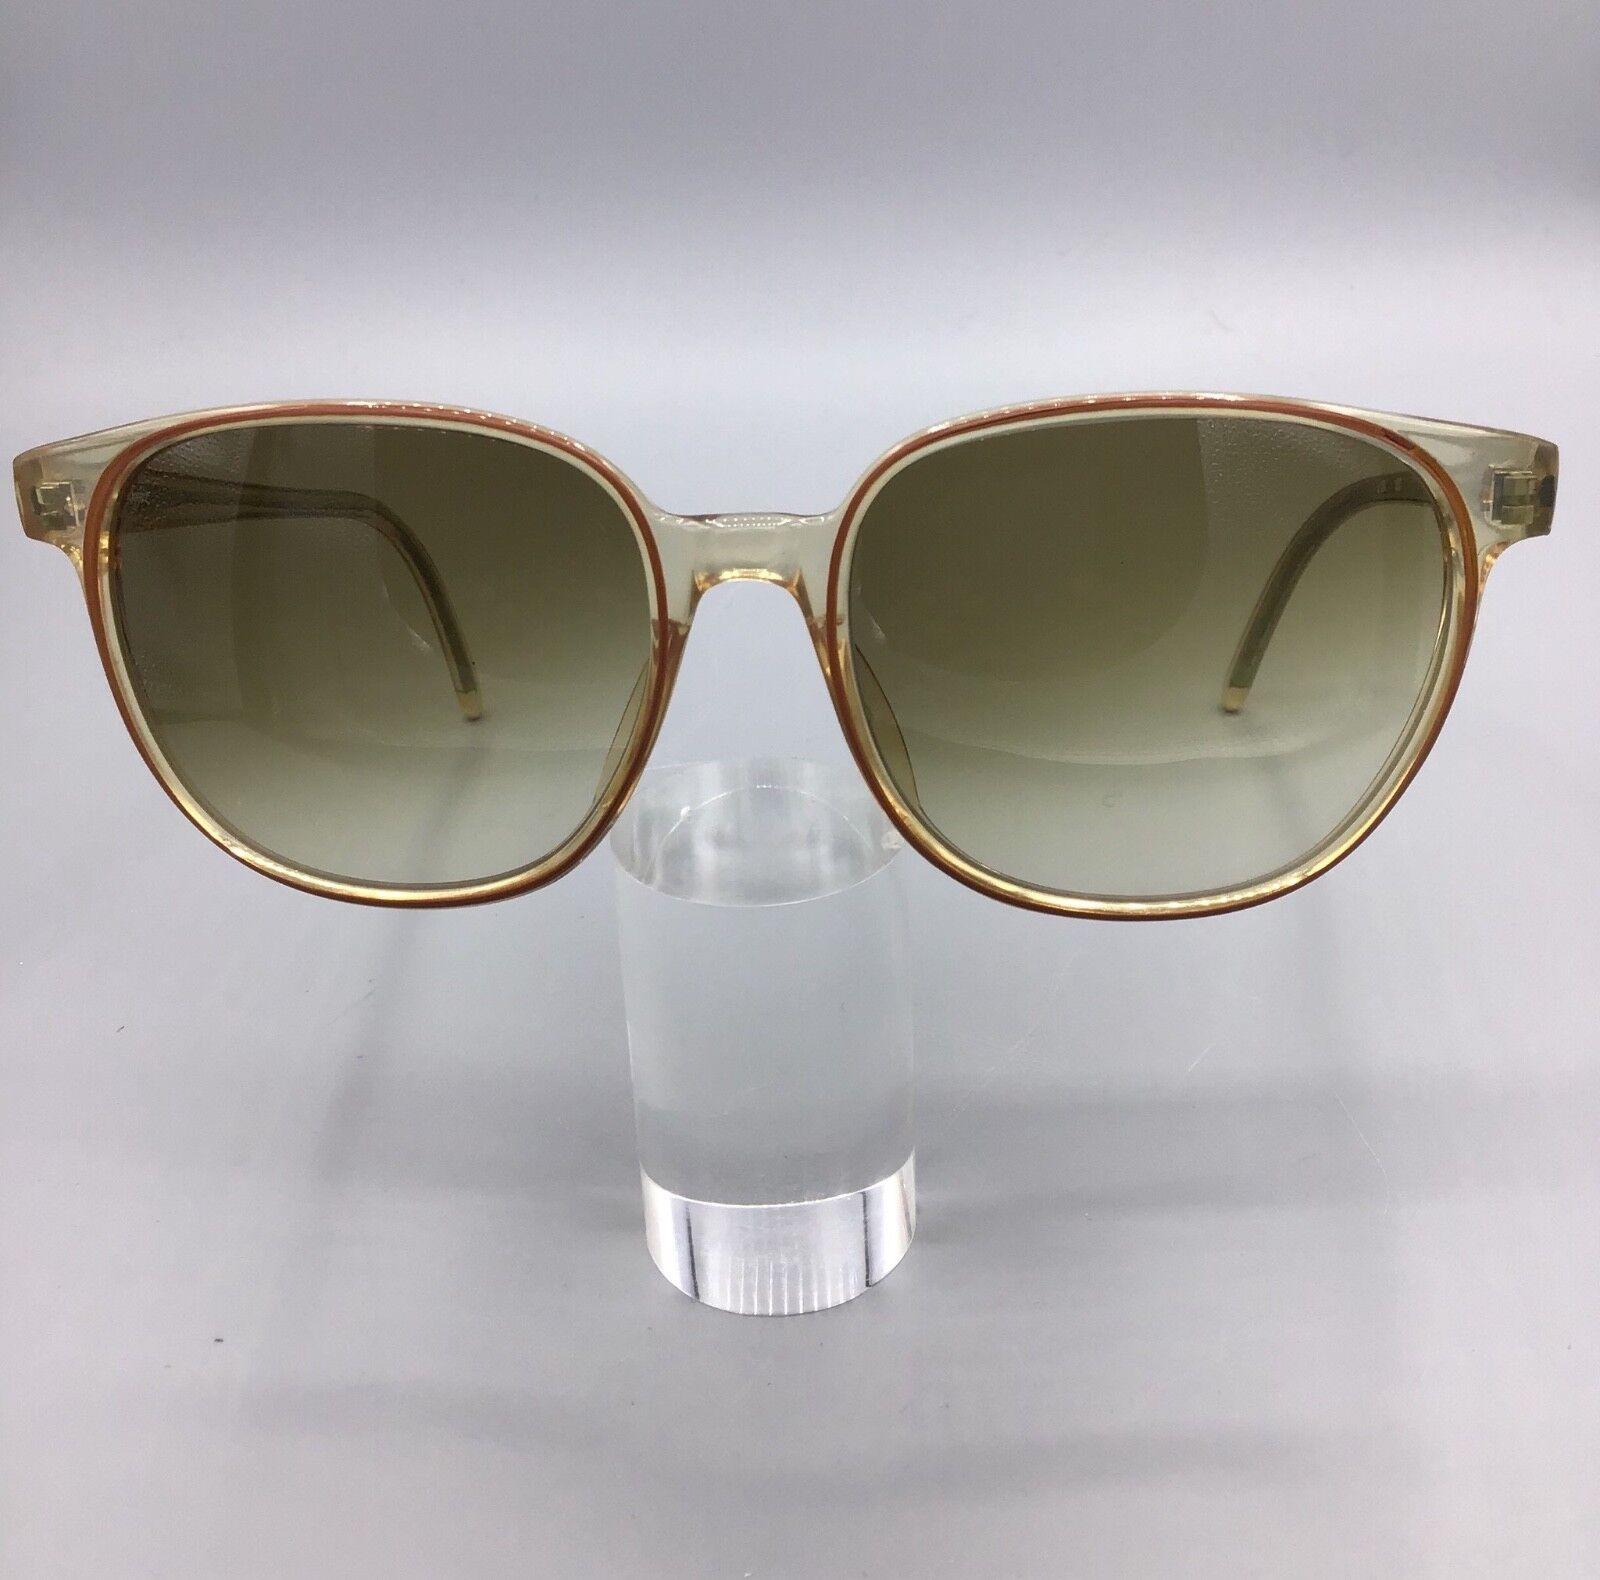 Vogart occhiale vintage model L31 120 lunettes gafas sunglasses sonnenbrillen